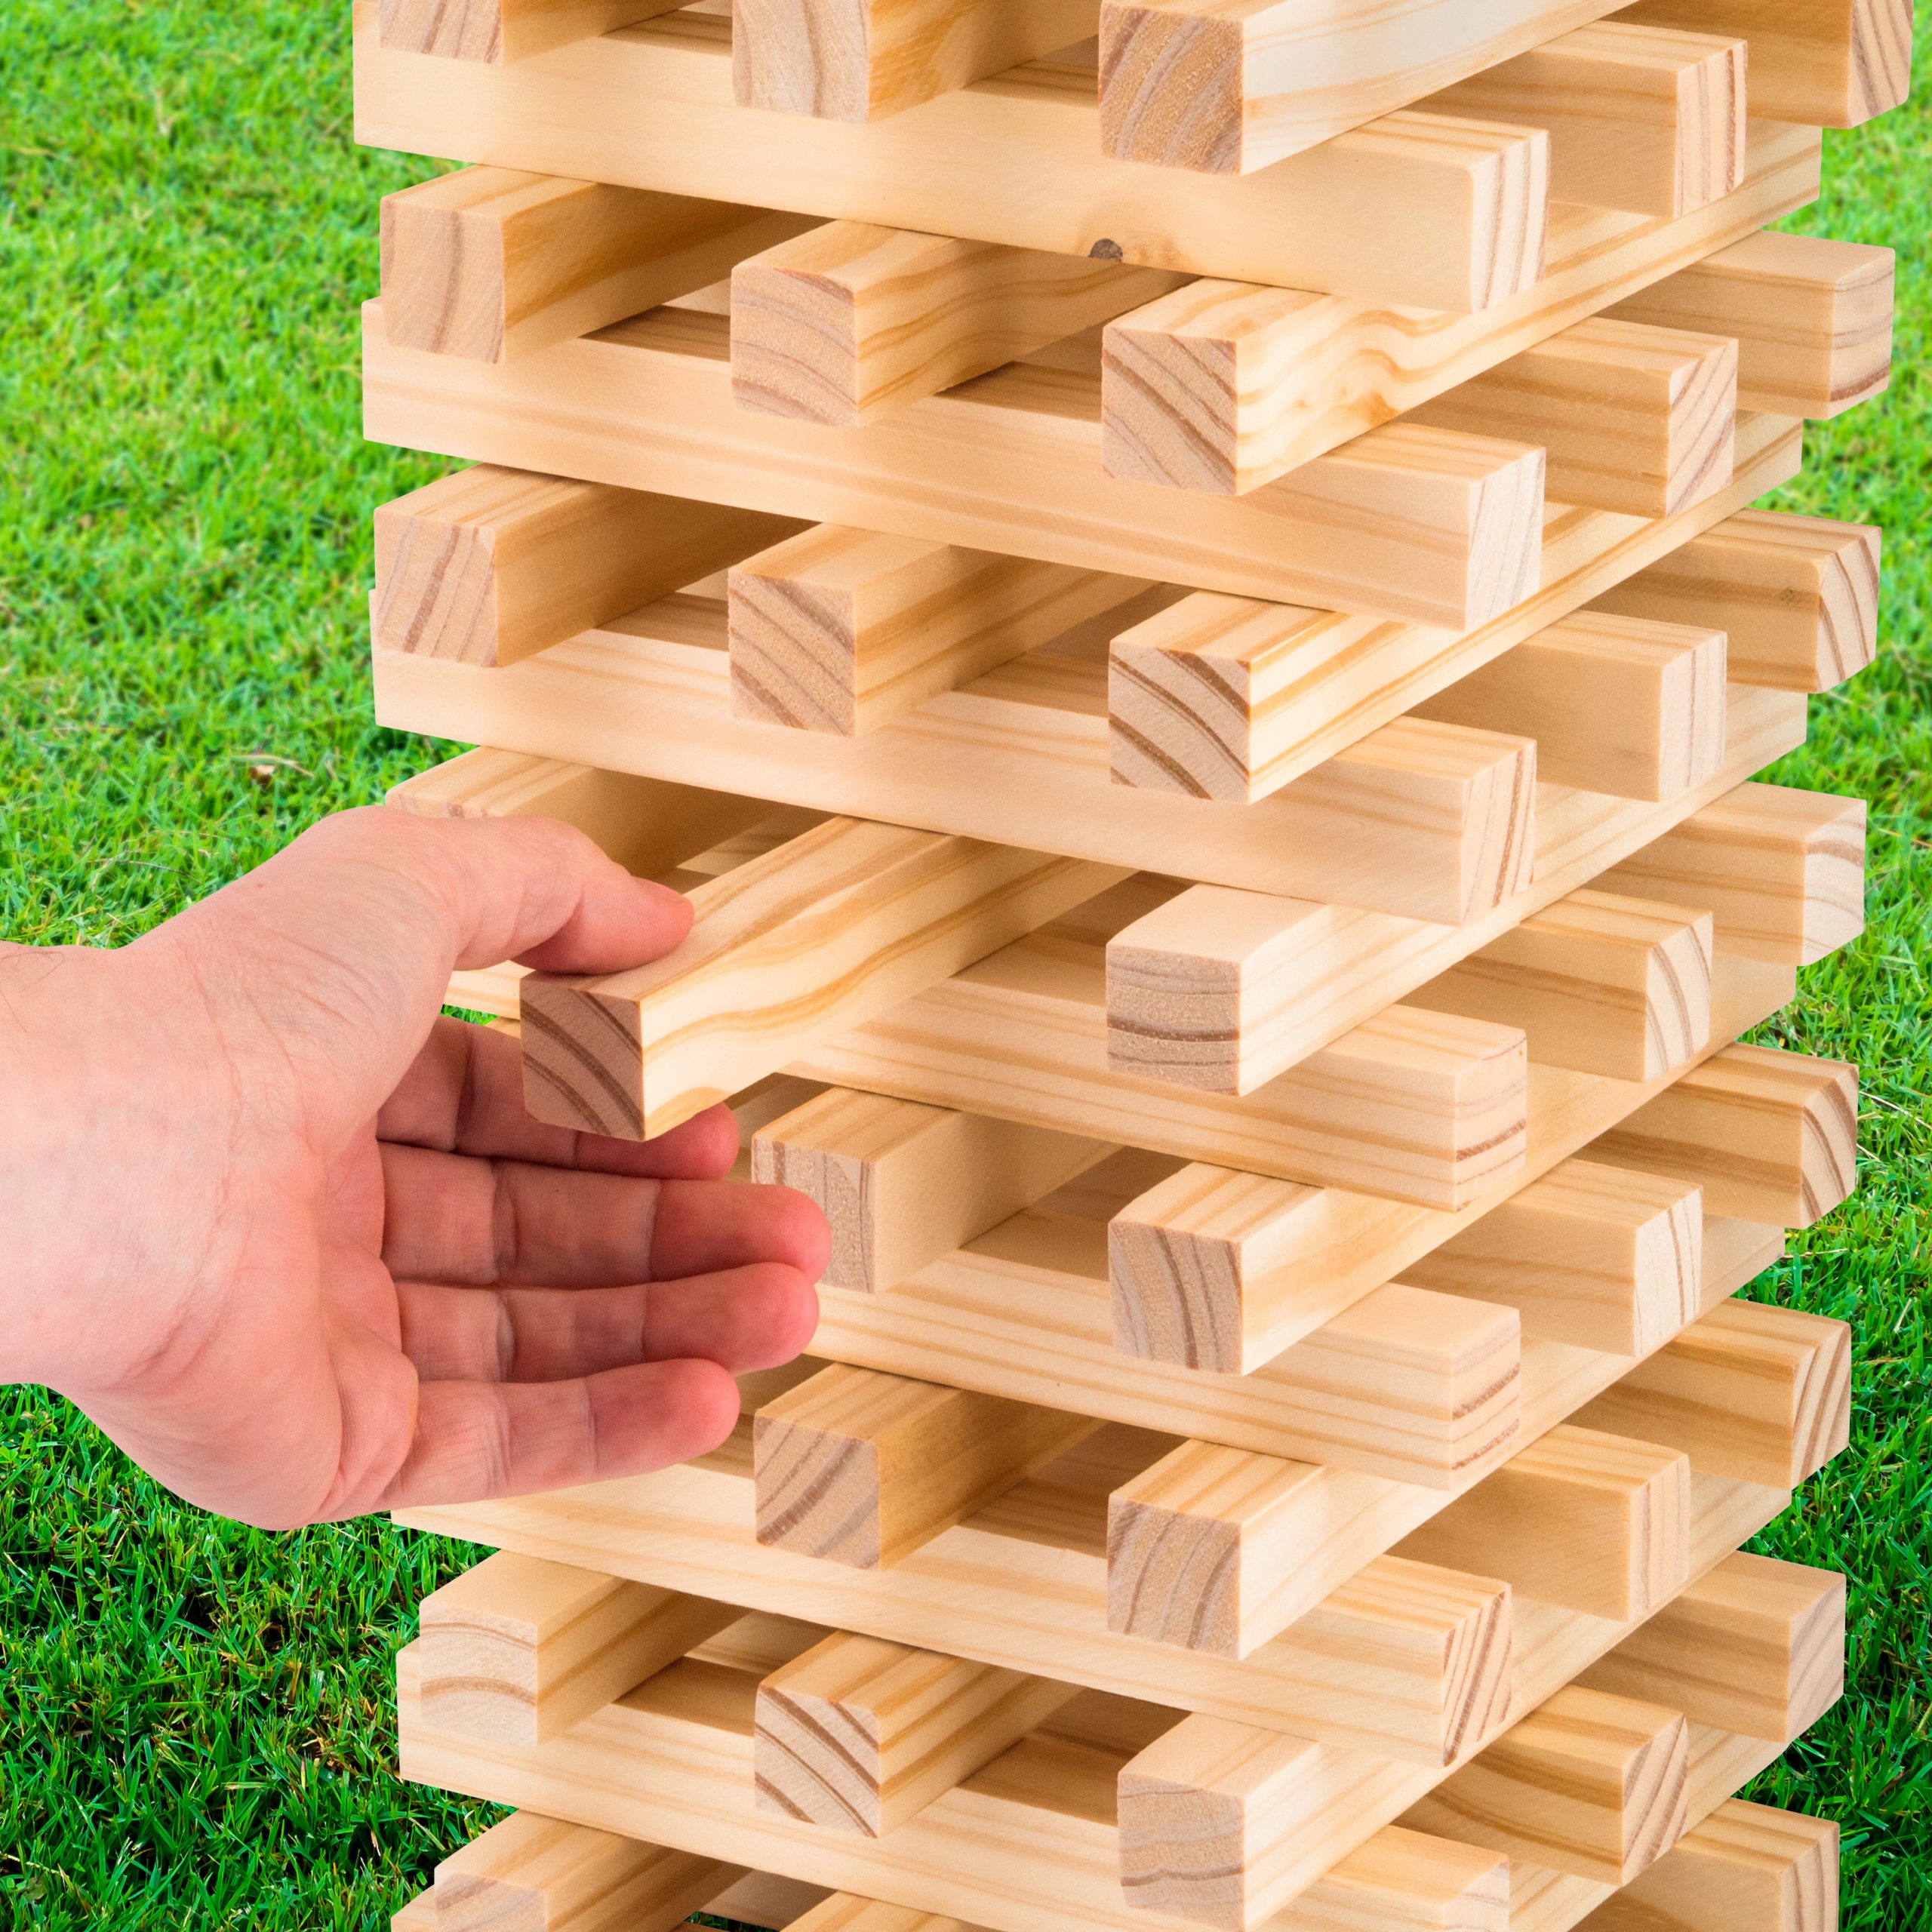 Giant Jumbo Jenga Tumbling Tower Wooden Blocks Outdoor Family Garden Game 